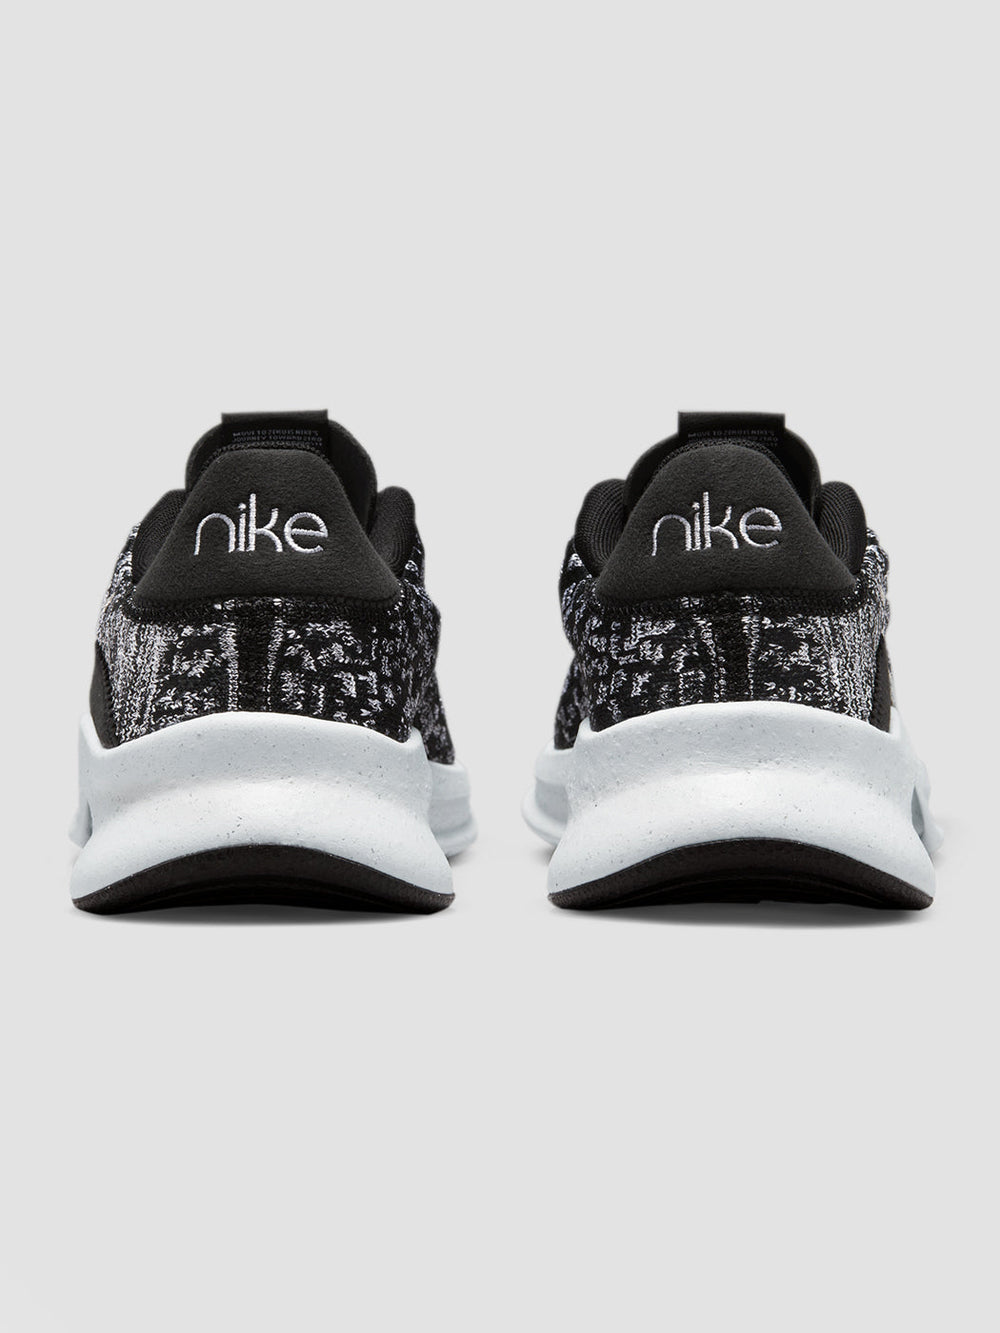 Nike SuperRep Go 3 Flyknit "Next Nature" - Black/Metallic Silver-White